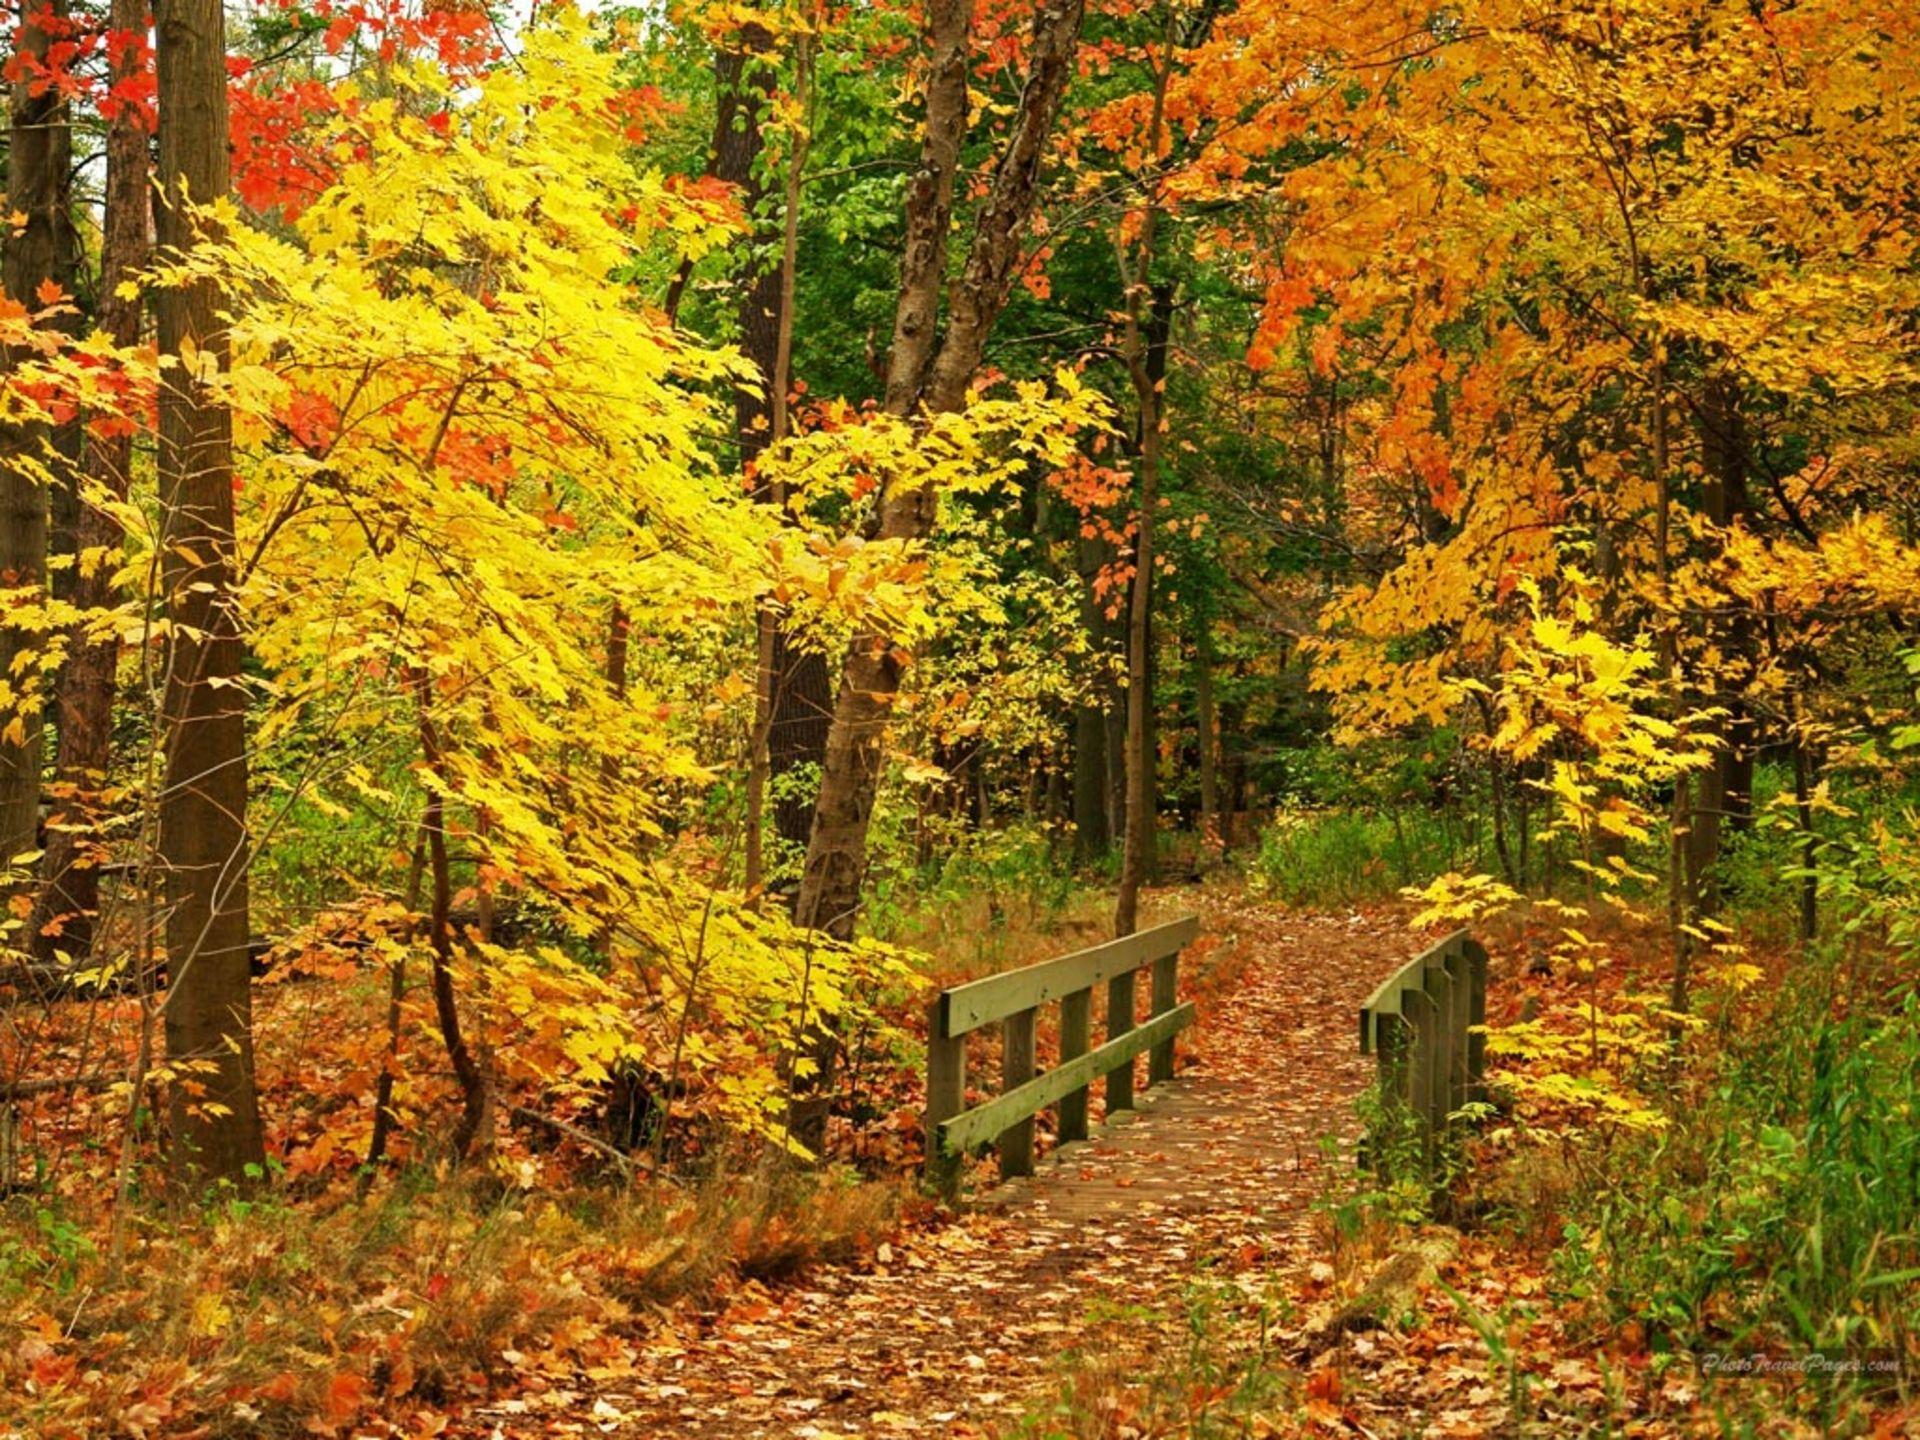 Fall scenes. Осень. Ранняя осень в лесу. Осень октябрь. Осенний лес листопад.